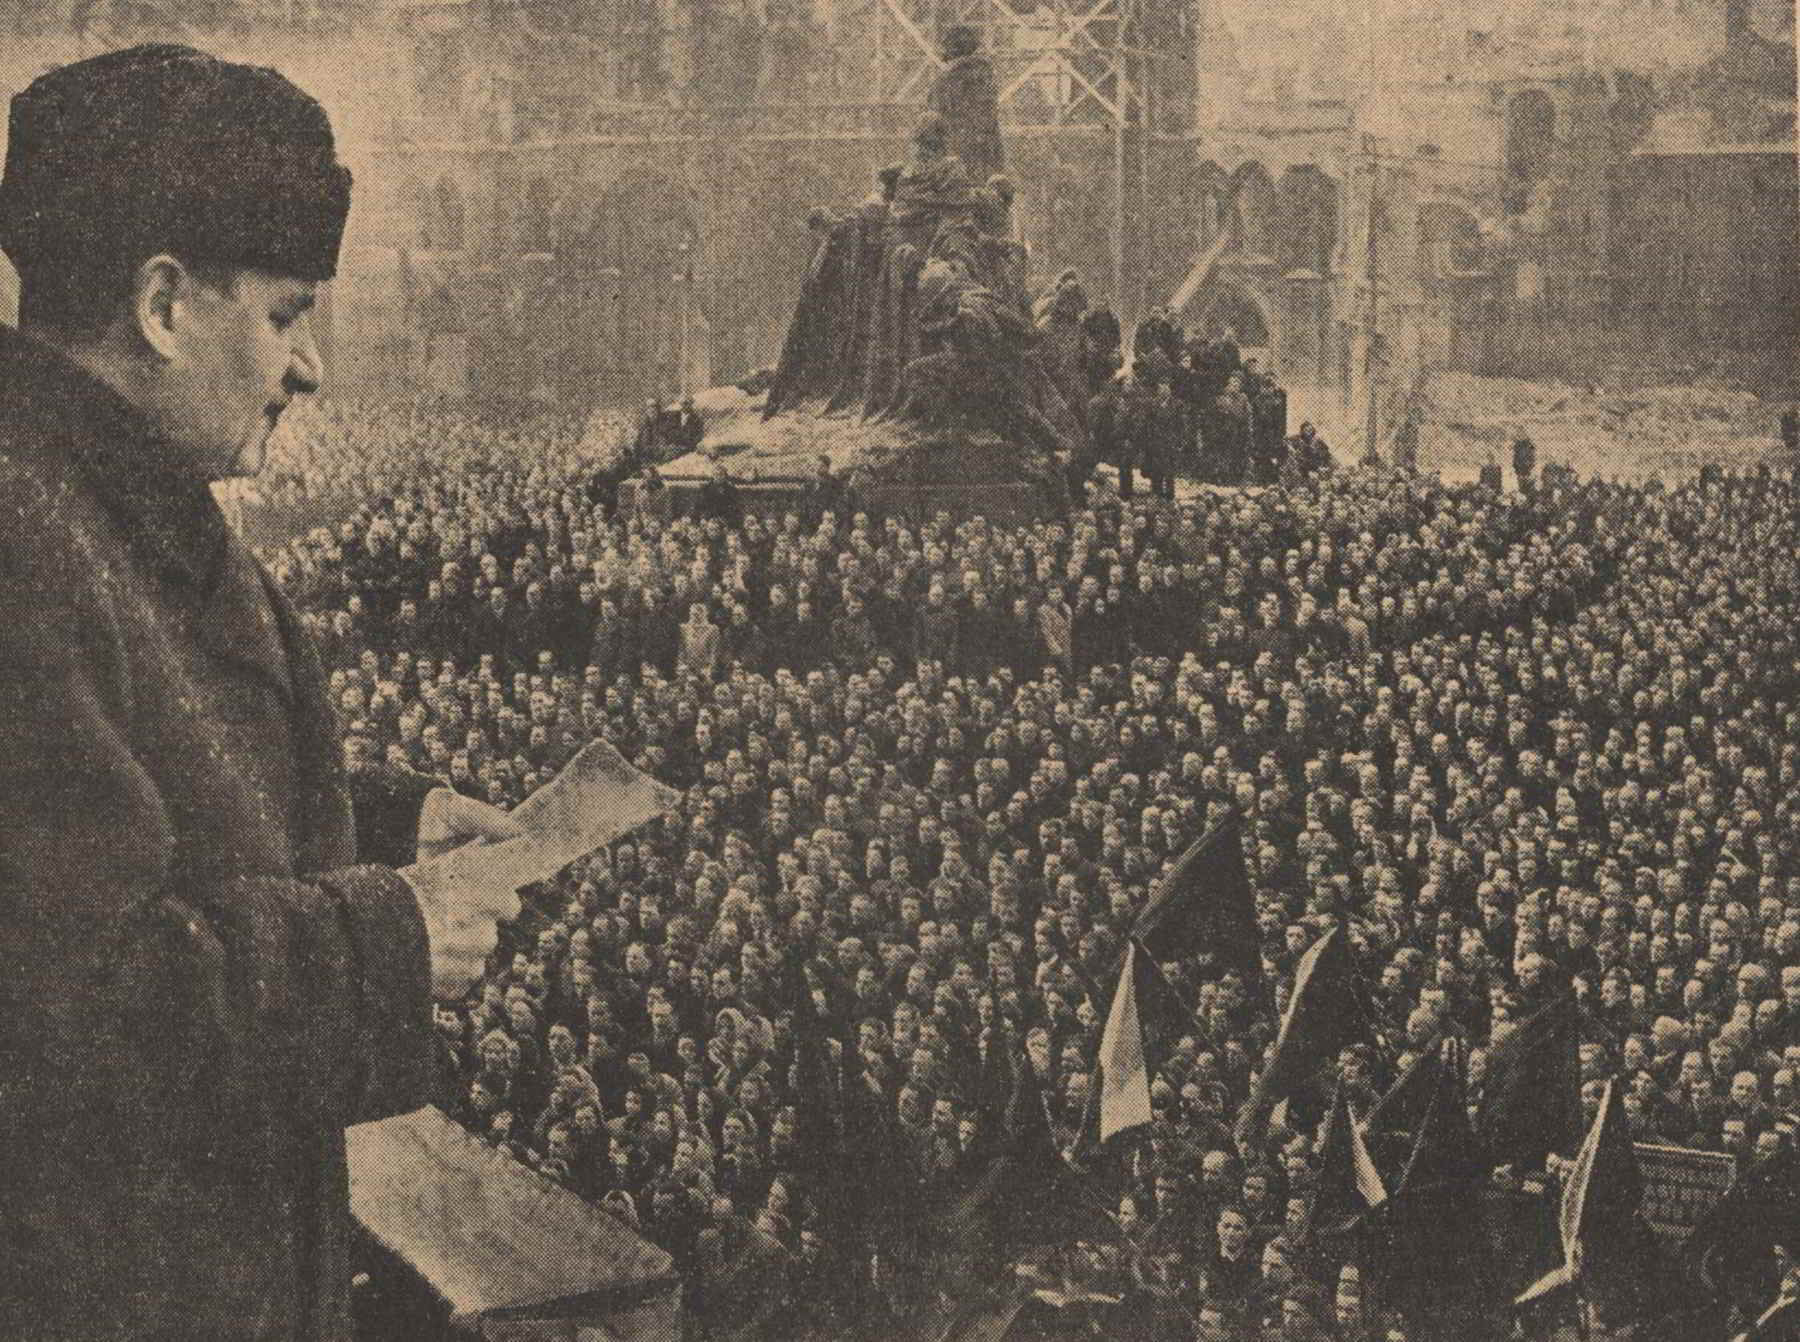 Klement Gottwald durante la manifestazione comunista del 21 febbraio 1948